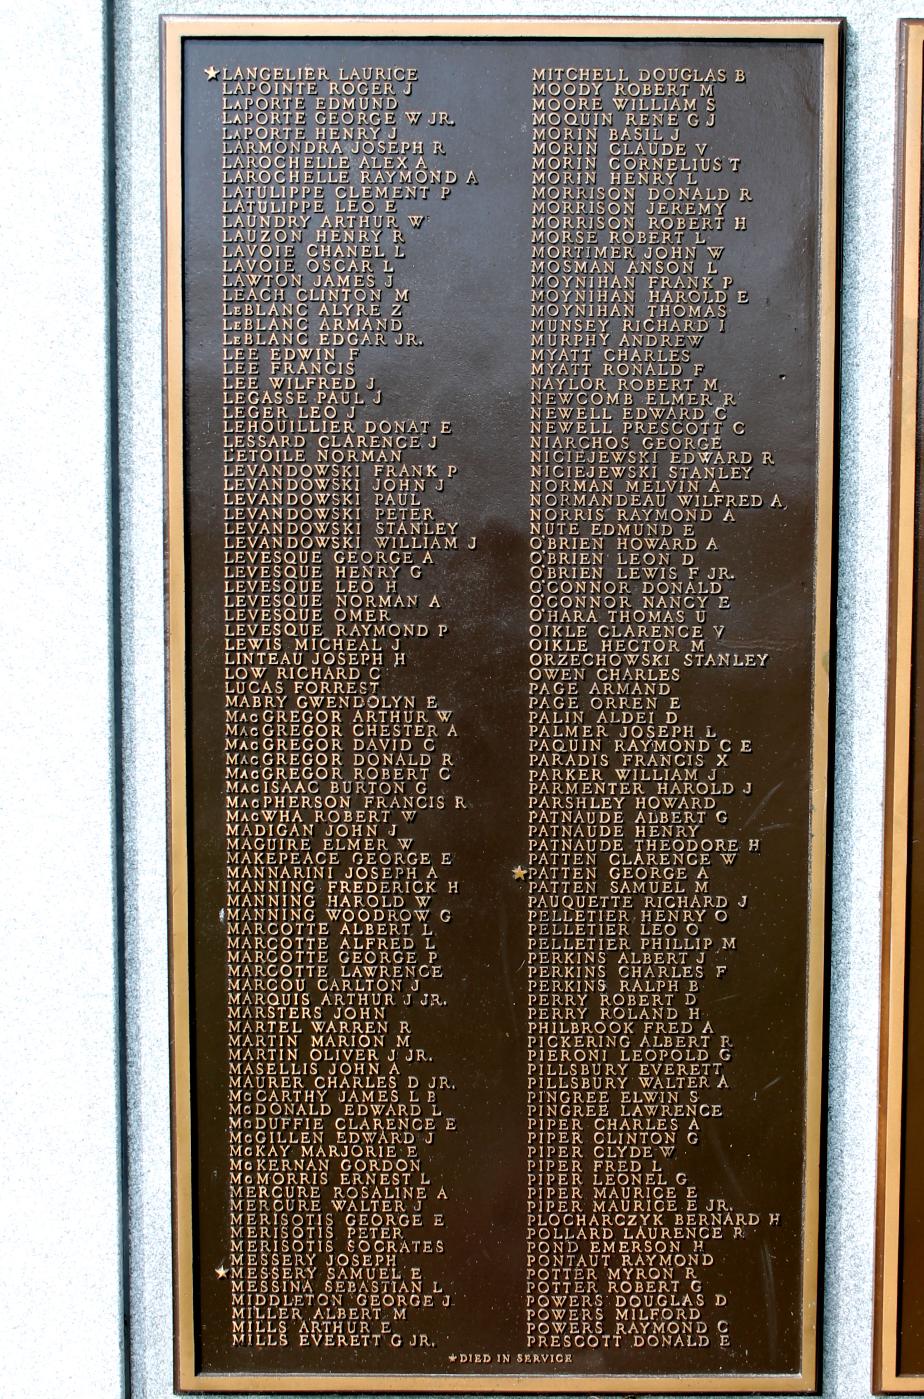 Derry NH World War II Veterans Memorial